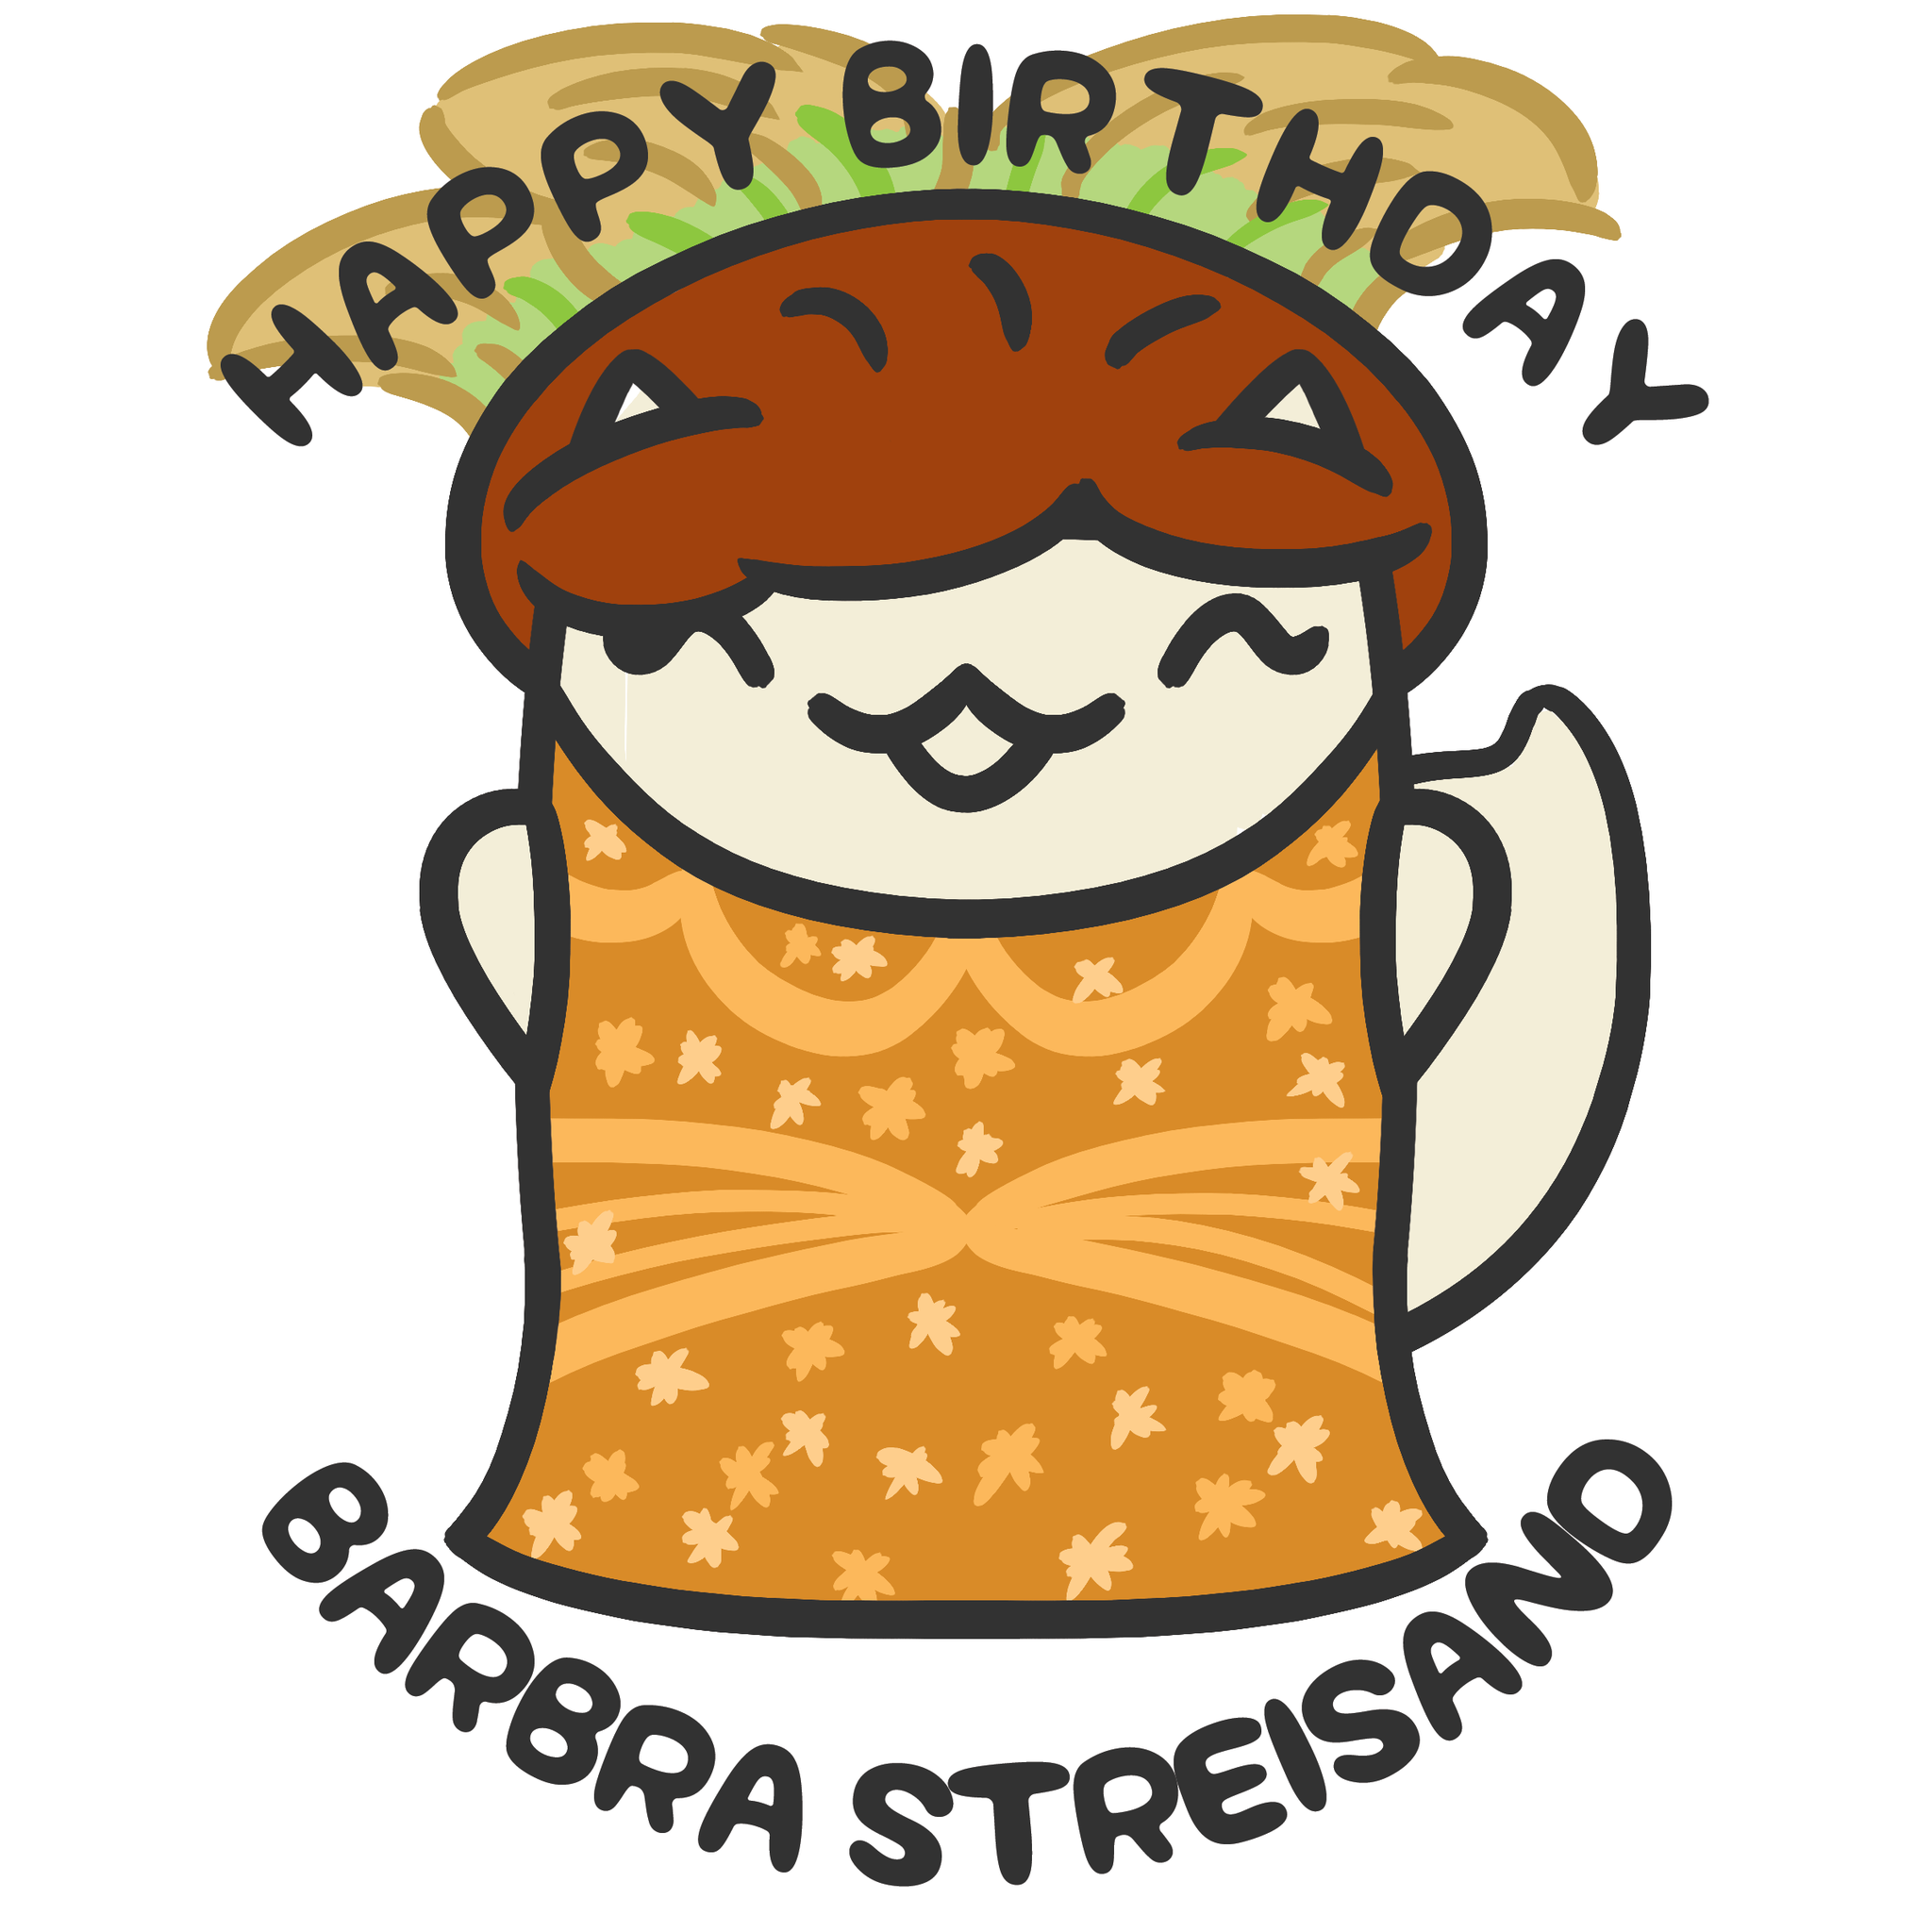 Happy Birthday, Barbra Streisand!  